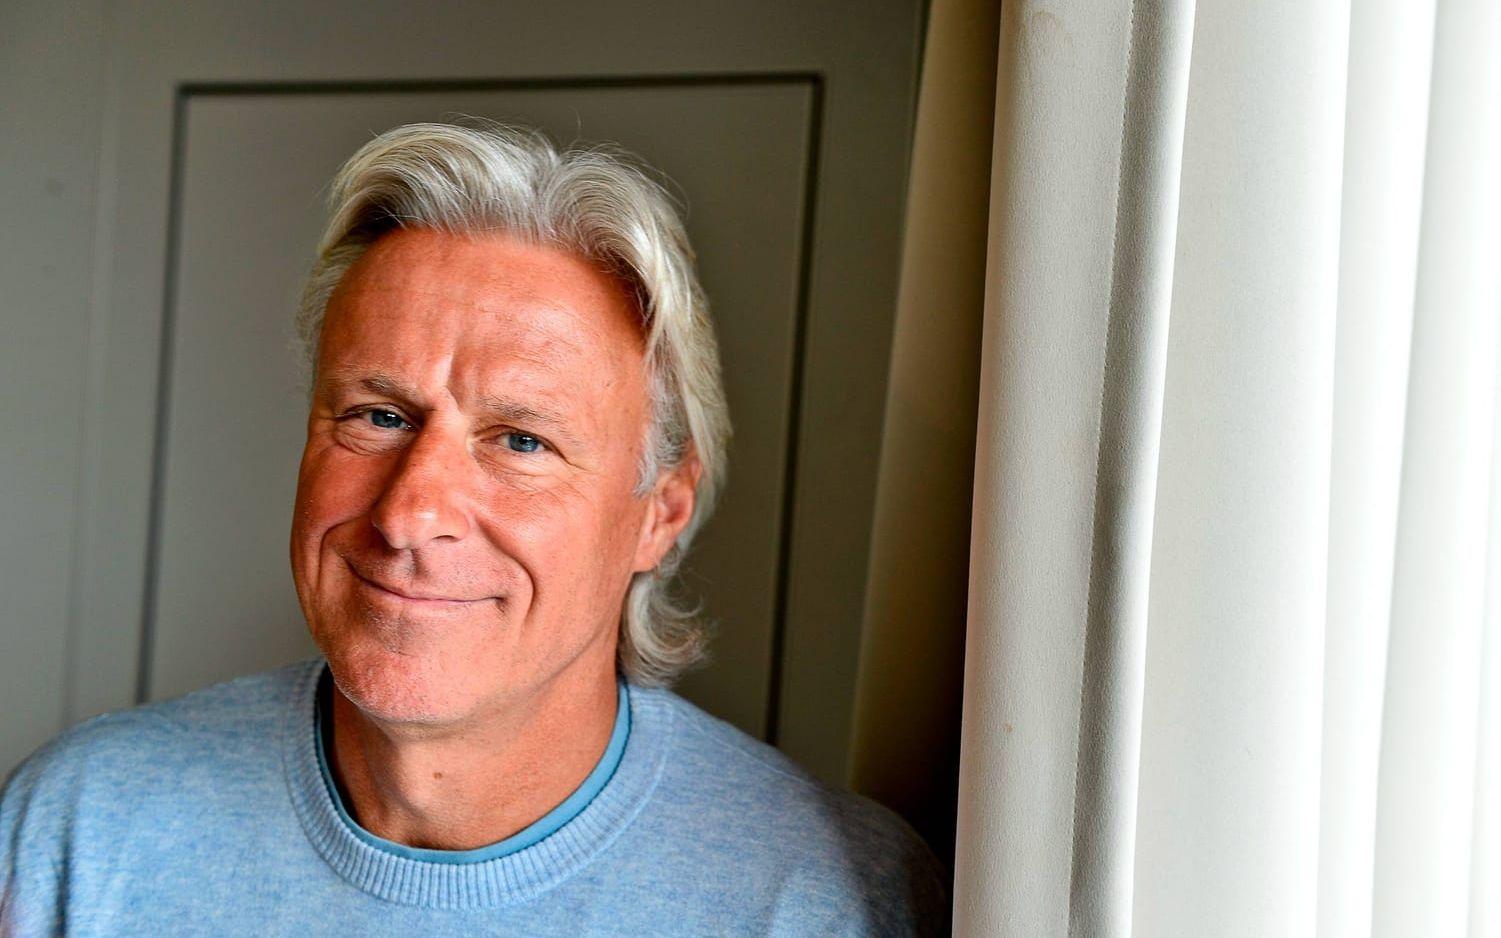 Leo Borgs pappa, Björn Borg, är Sveriges främsta tennisspelare genom tiderna. Foto: TT